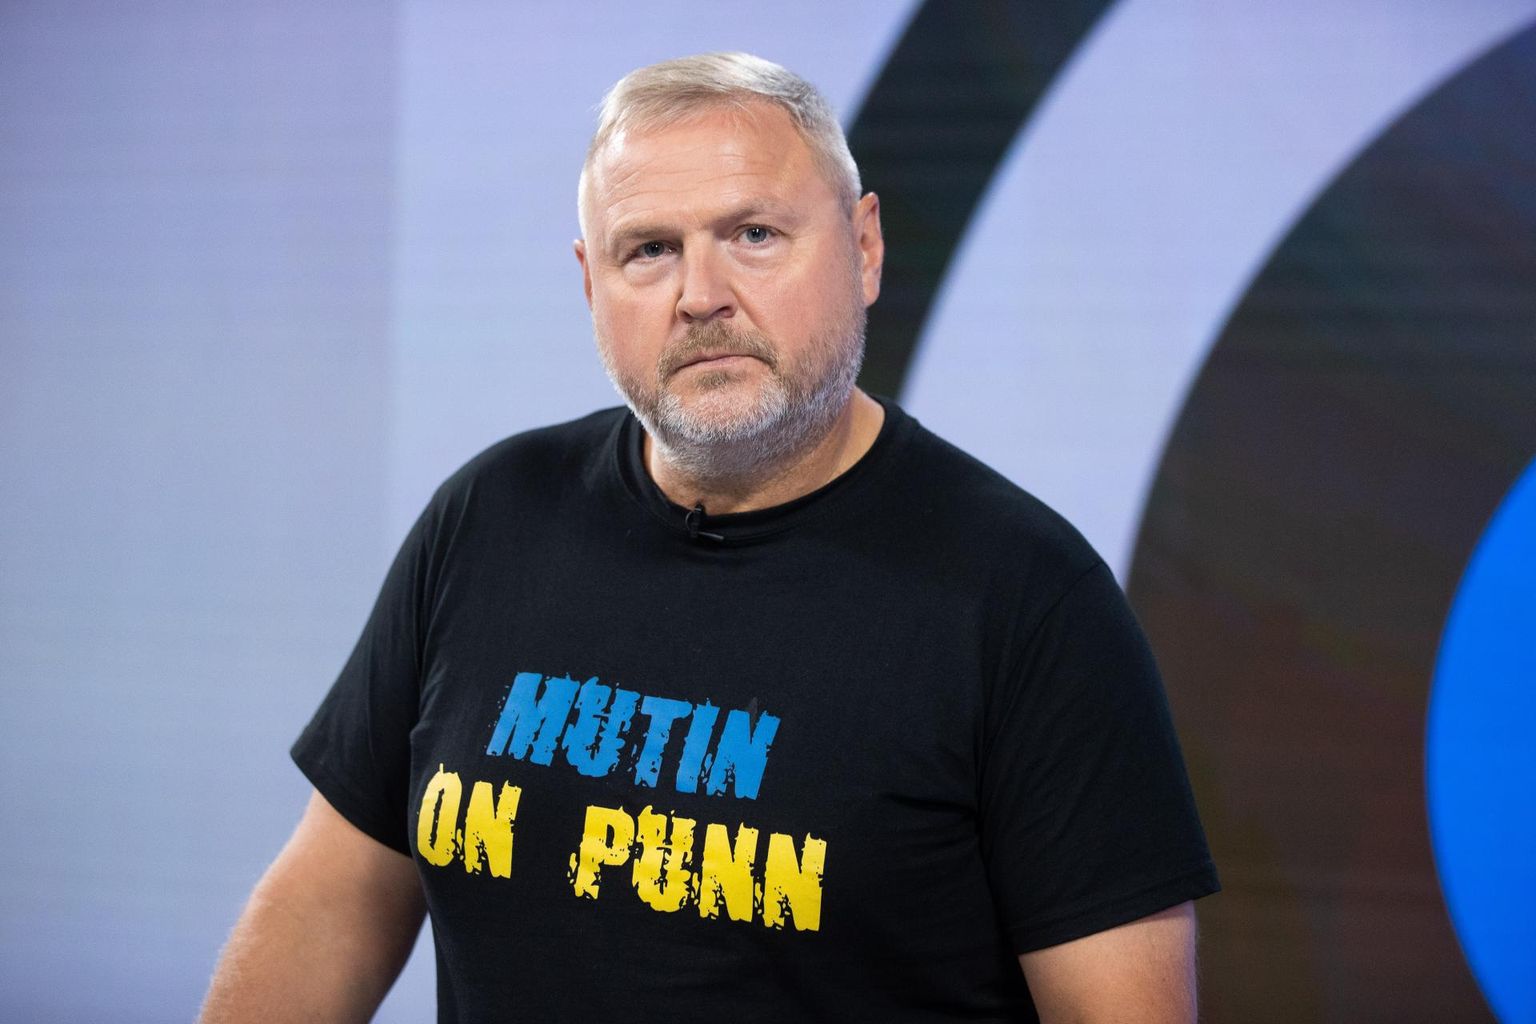 Рихо Террас в футболке с переведенной надписью «Хутин пуйло».